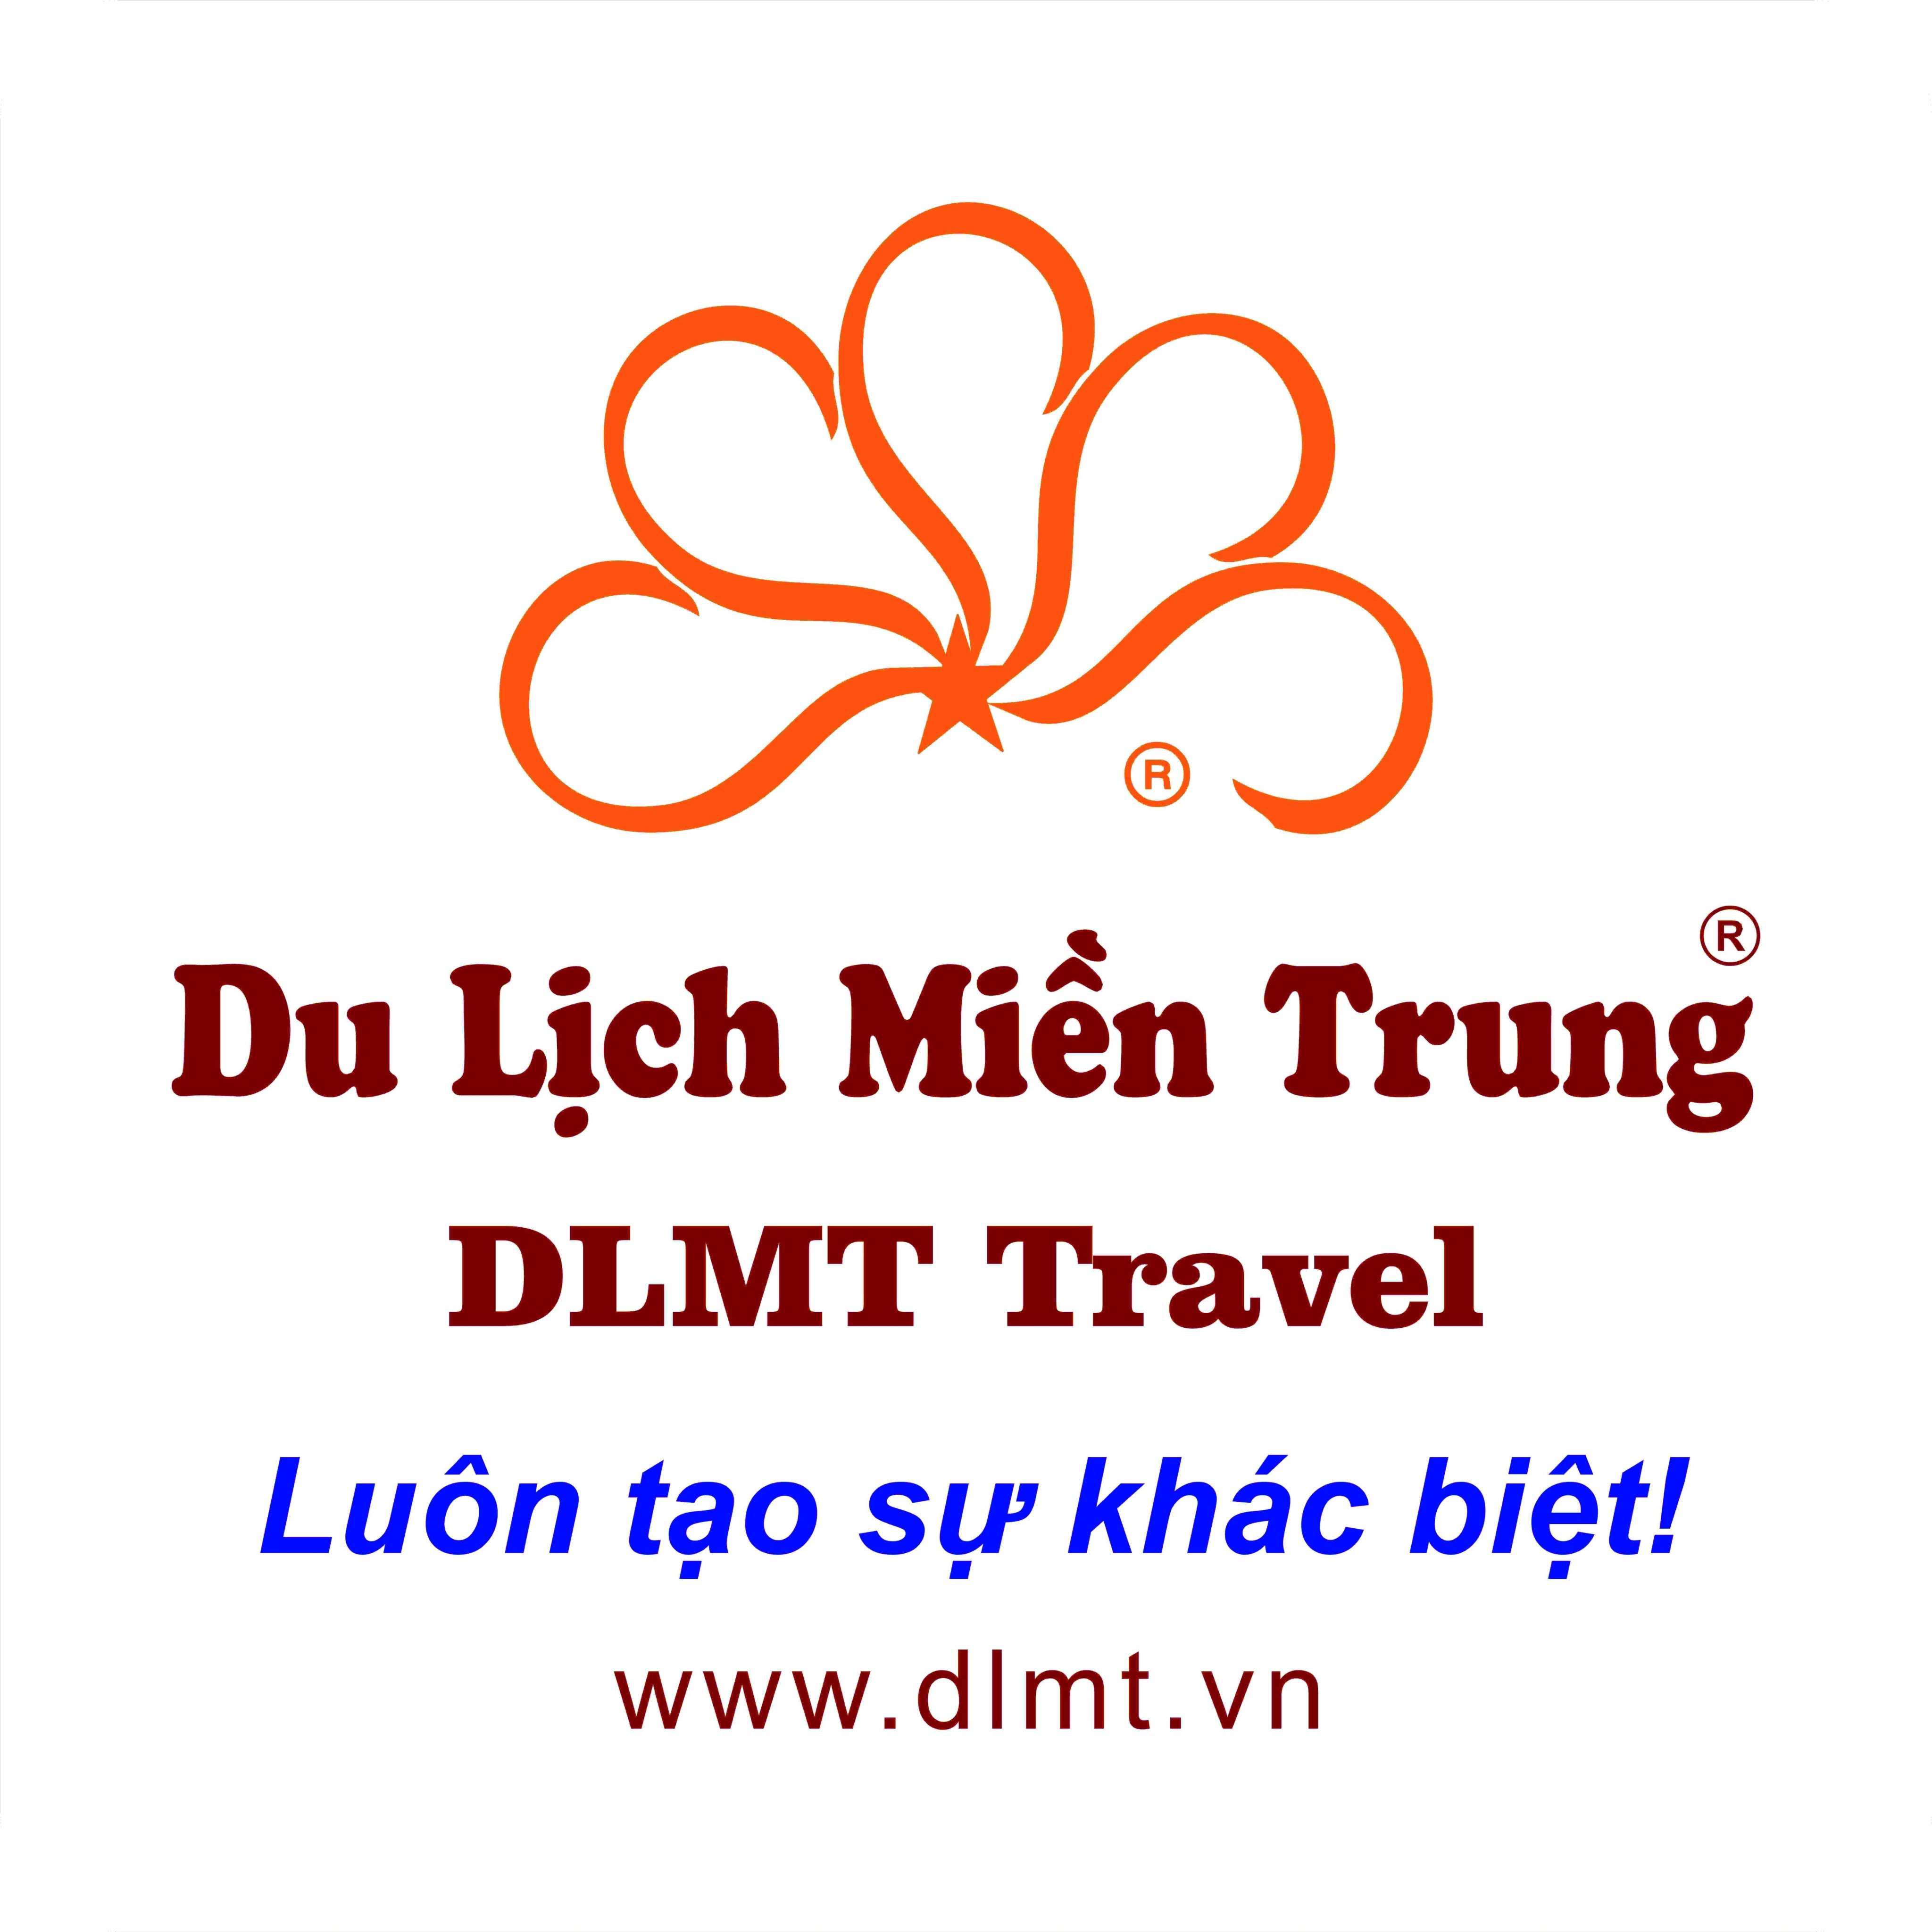 Central Vietnam Tourism Company Ltd